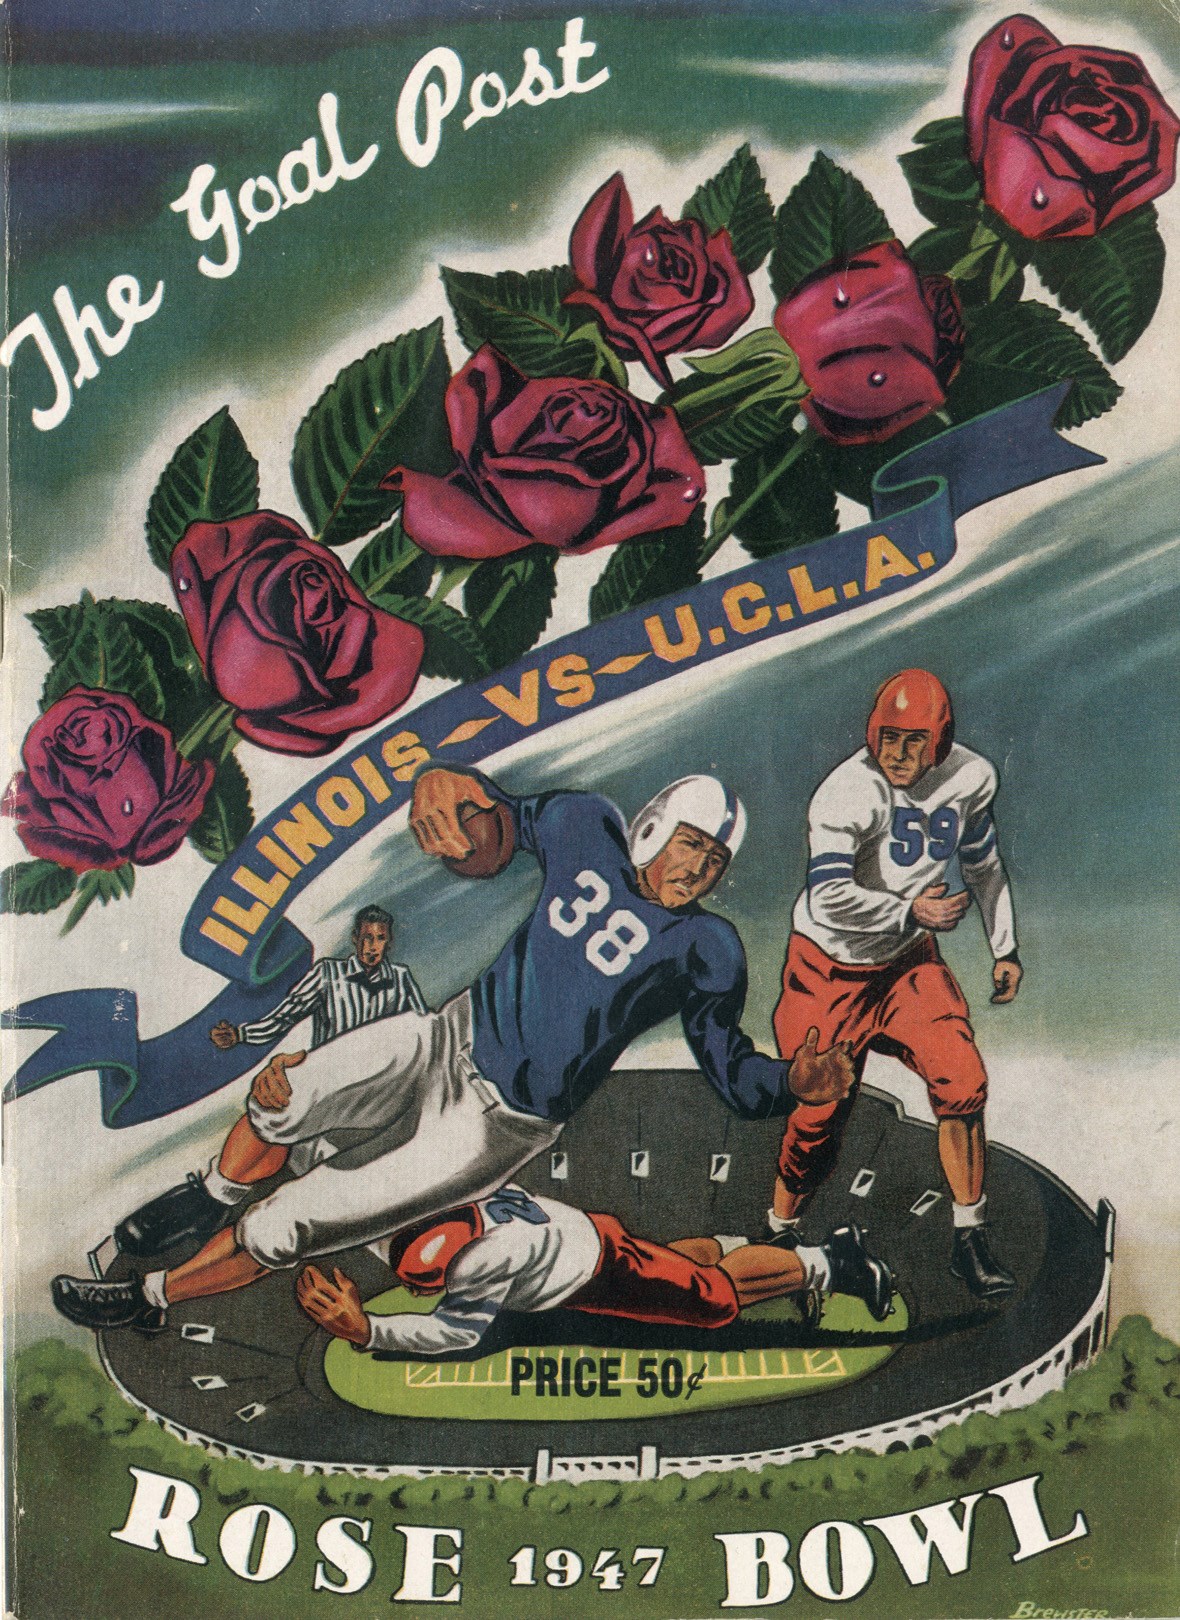 - 1947 Rose Bowl Program